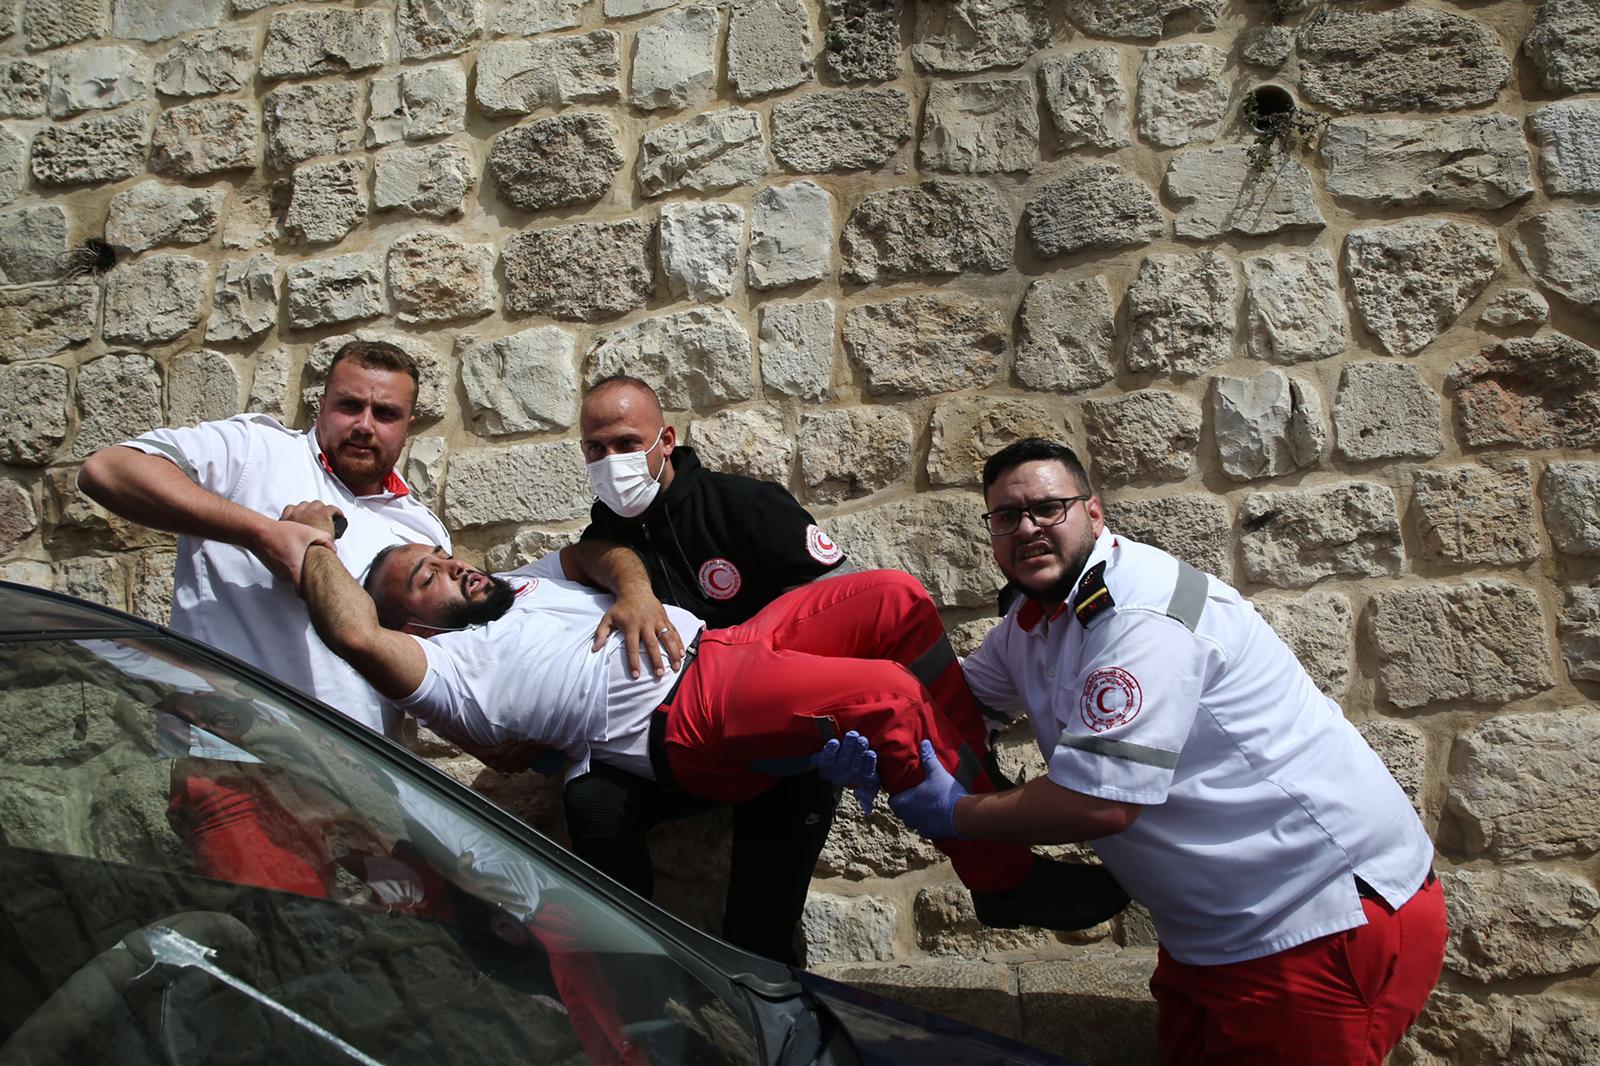 تجمع الأطباء بأوروبا يدين اعتداءات الاحتلال في القدس